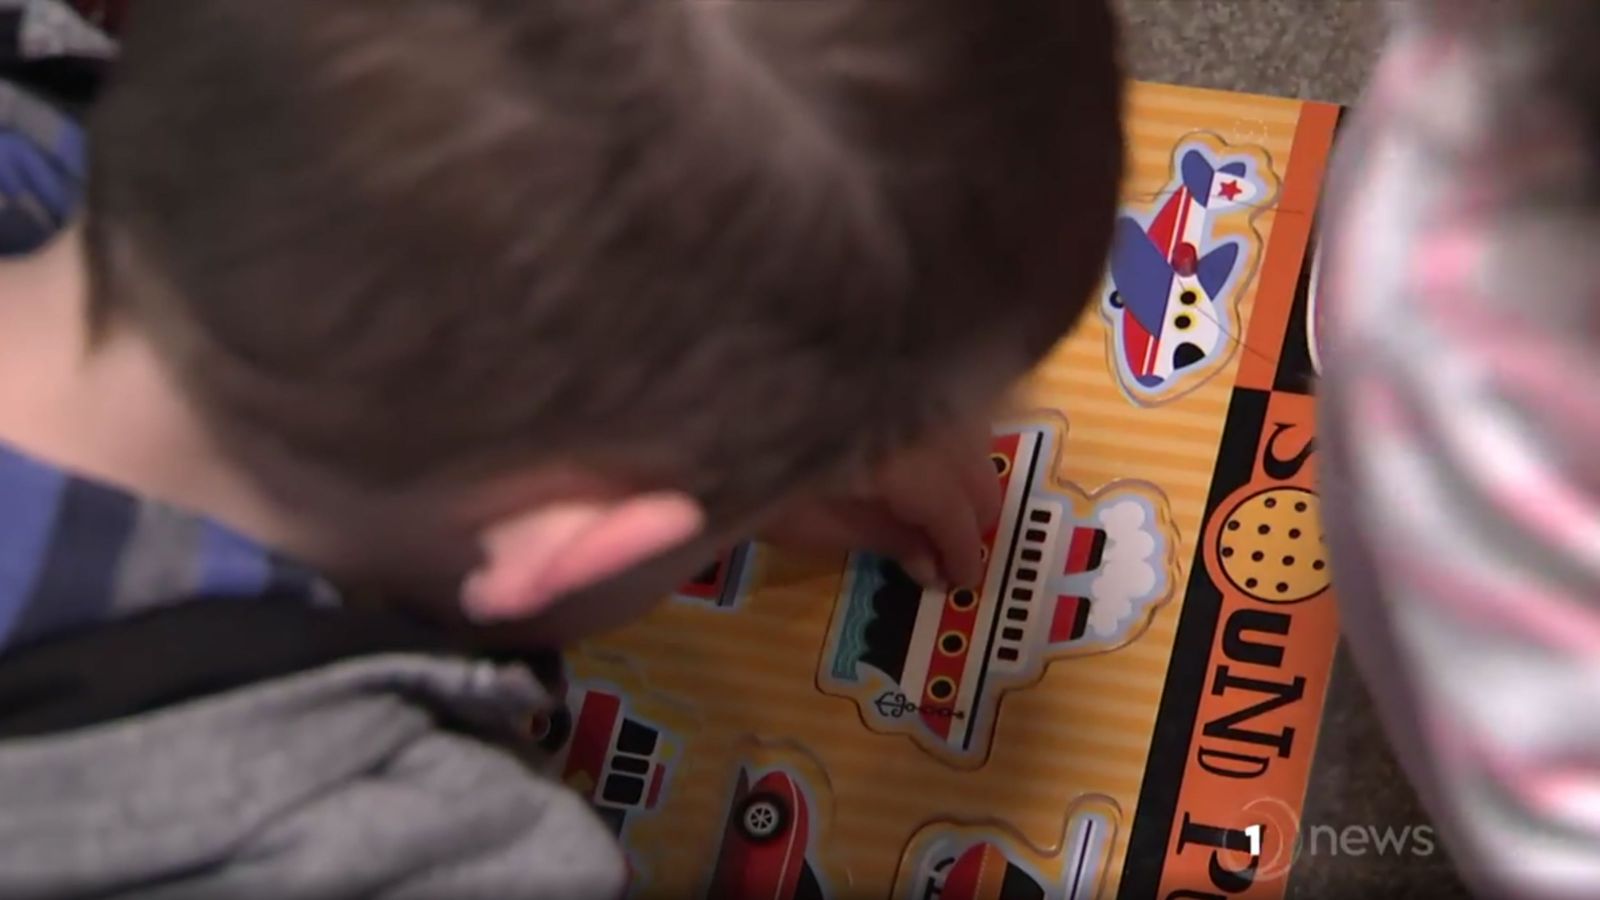 A child places a wooden ship puzzle piece into a puzzle.